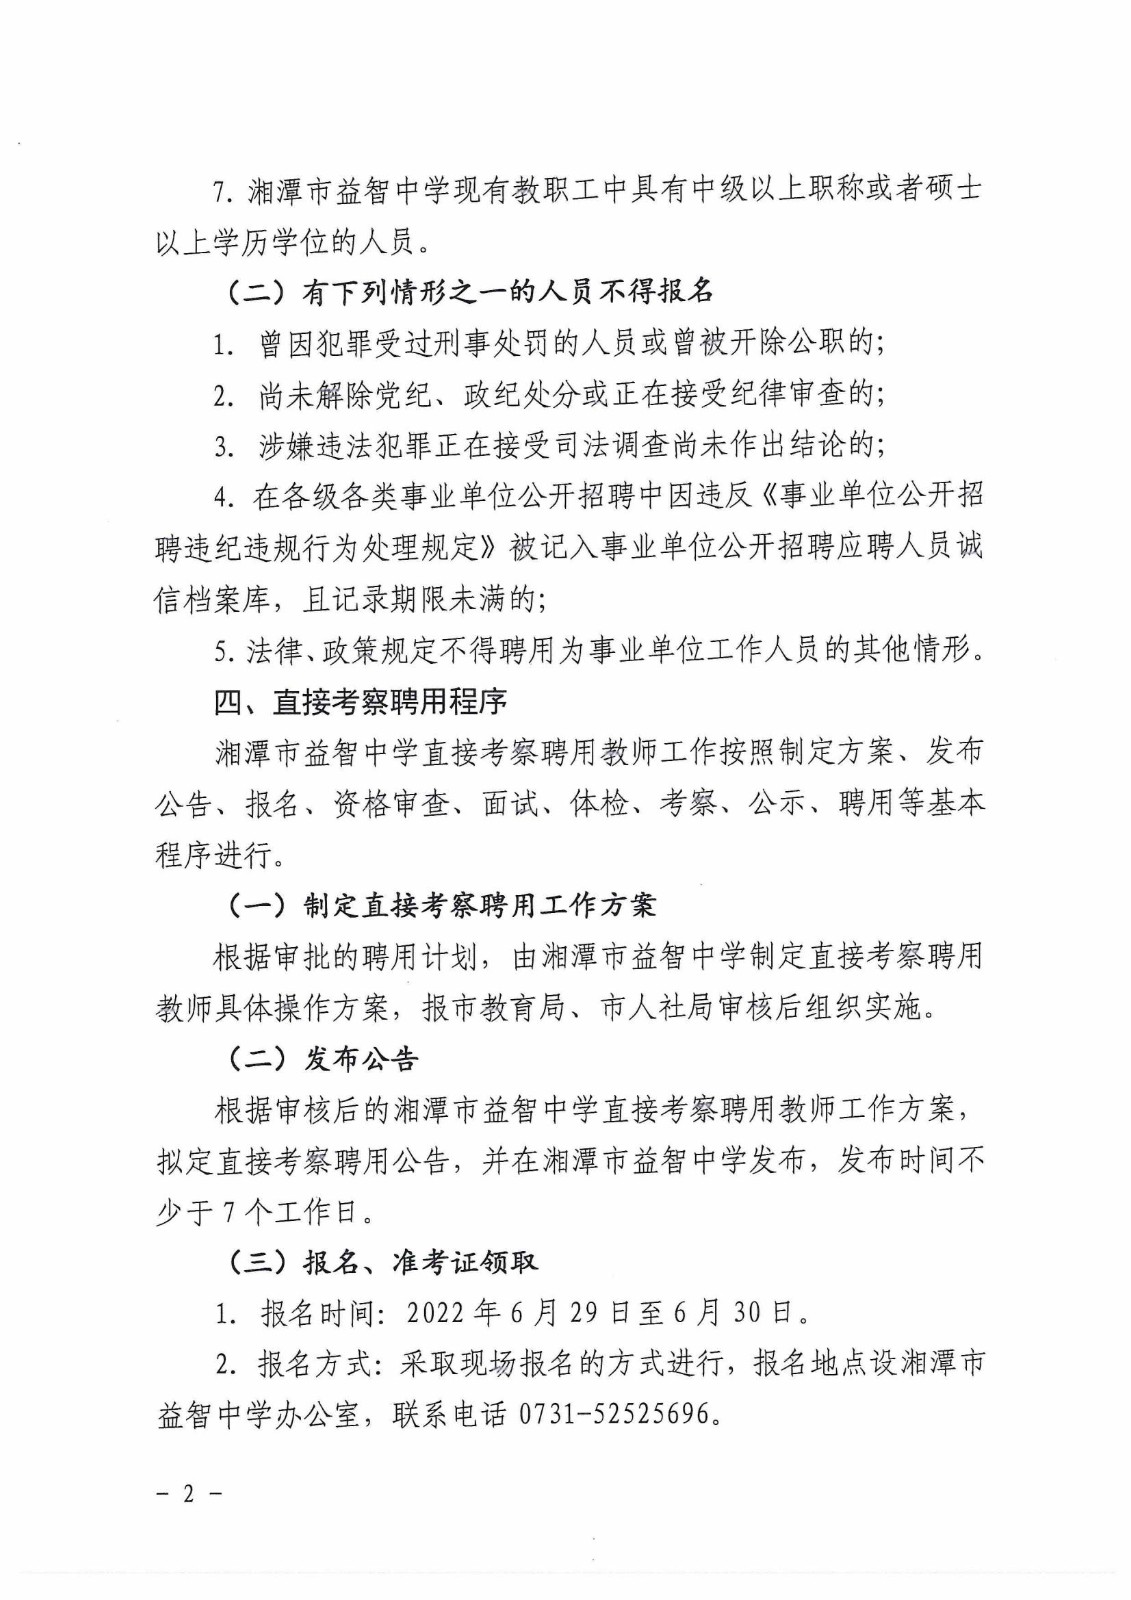 湘潭市益智中学2022年直接考察聘用教师公告